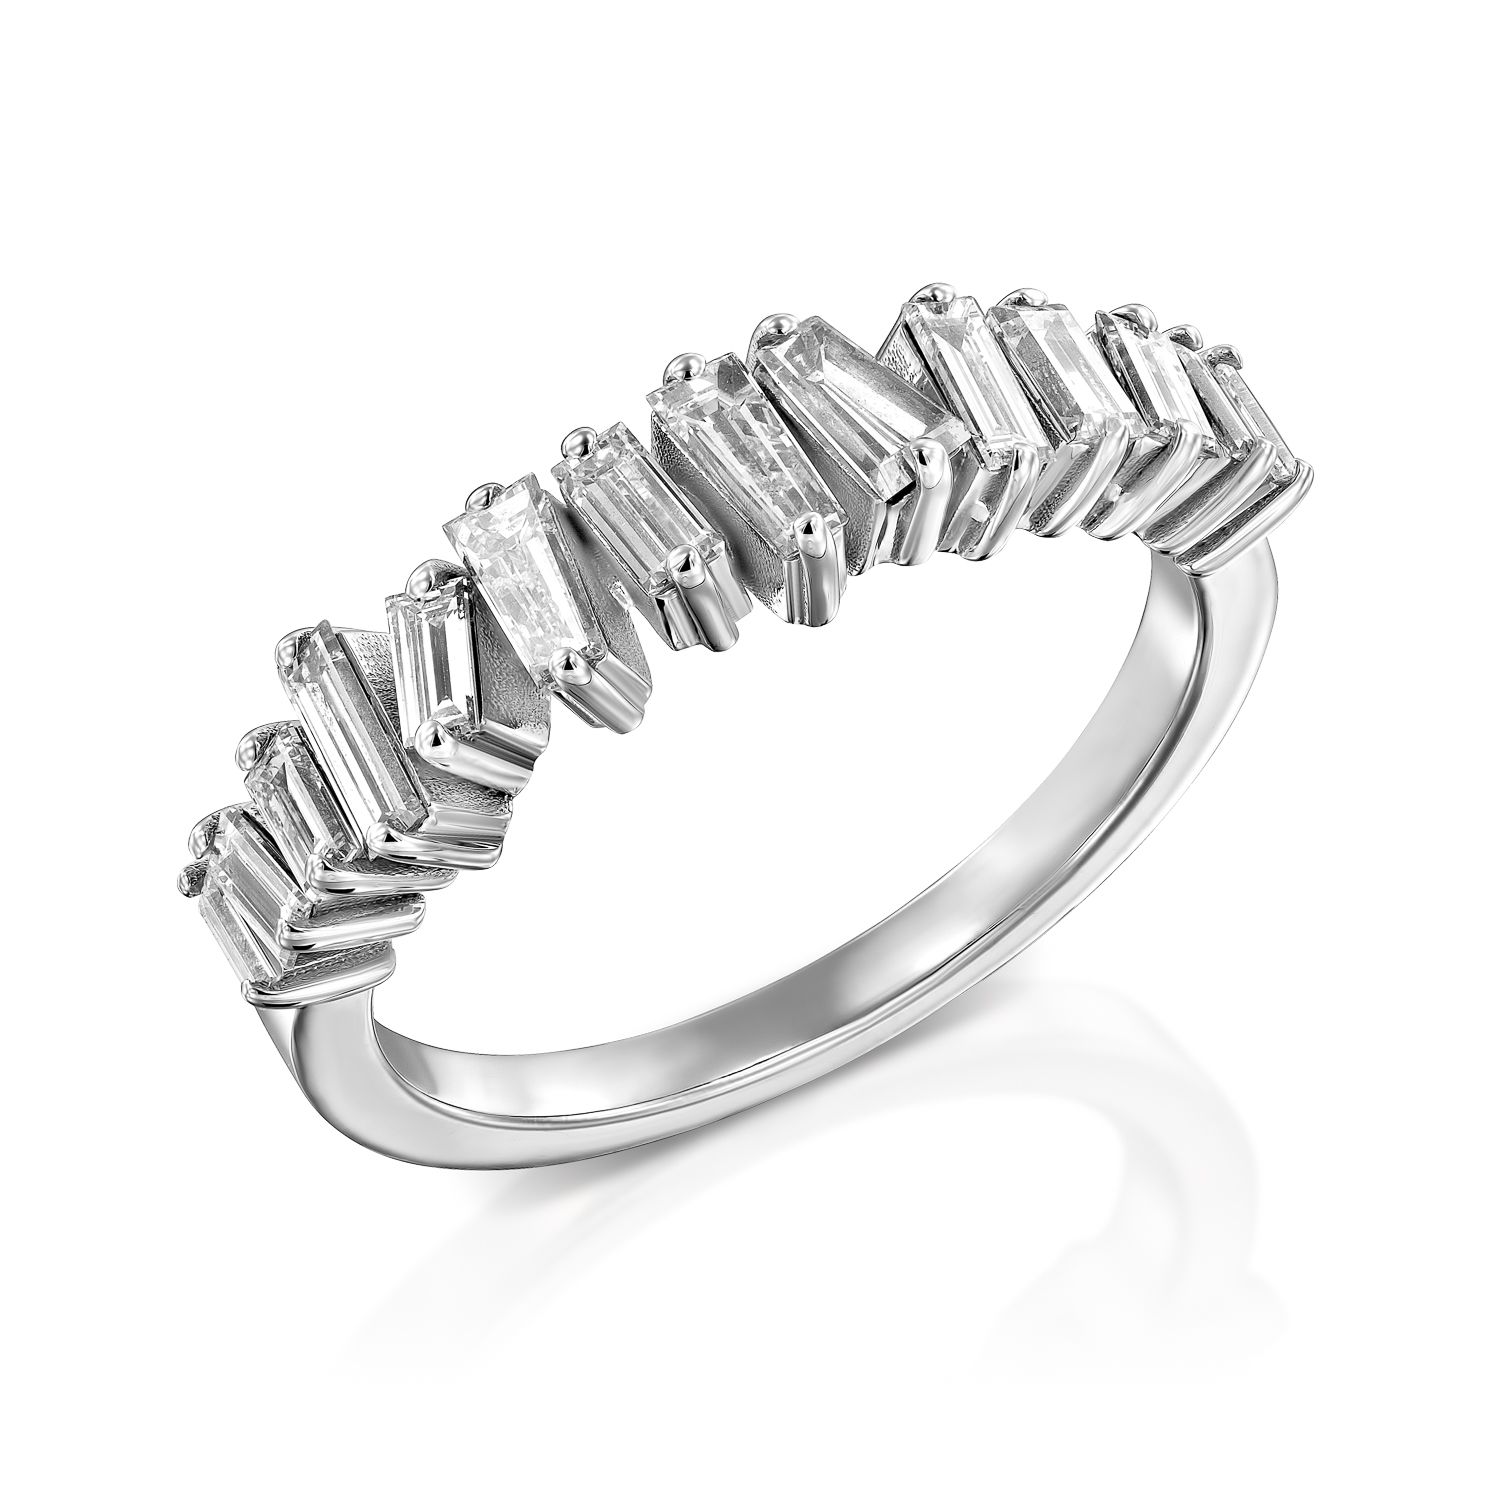 דגם טבעת יהלומים אלגנטי מעוטר בשורה של יהלומים נוצצים בחיתוך אמרלד, המציגים עיצוב יוקרתי ועכשווי.